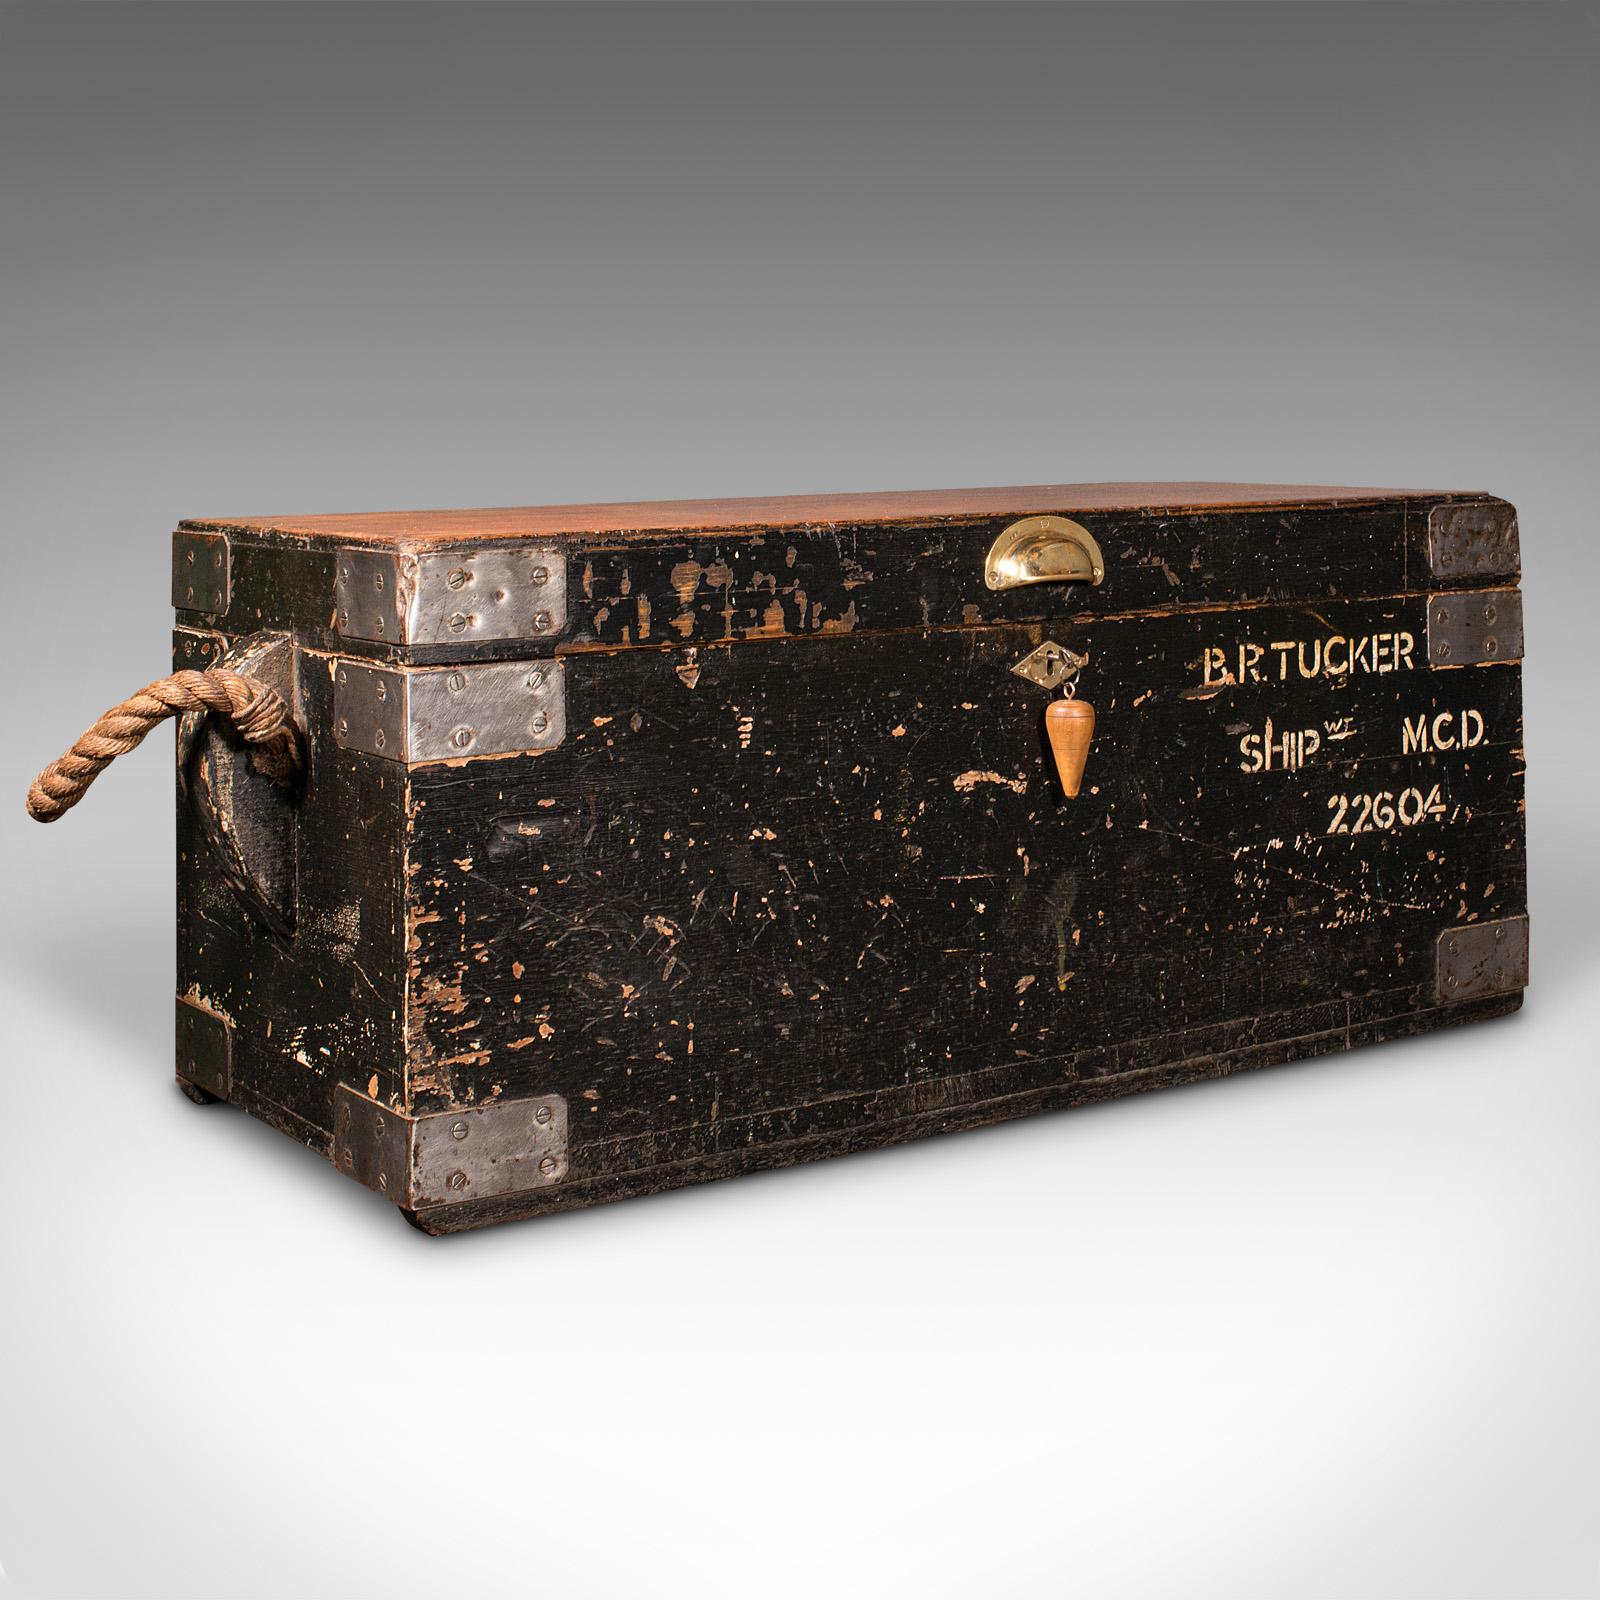 Es handelt sich um eine alte Werkzeugkiste eines Schiffbauers. Ein englischer Arbeitskoffer aus Zedern- und Kiefernholz aus der Mitte des 20. Jahrhunderts, ca. 1940.

Wunderbarer maritimer Charme, der sich hervorragend als Stauraum oder als